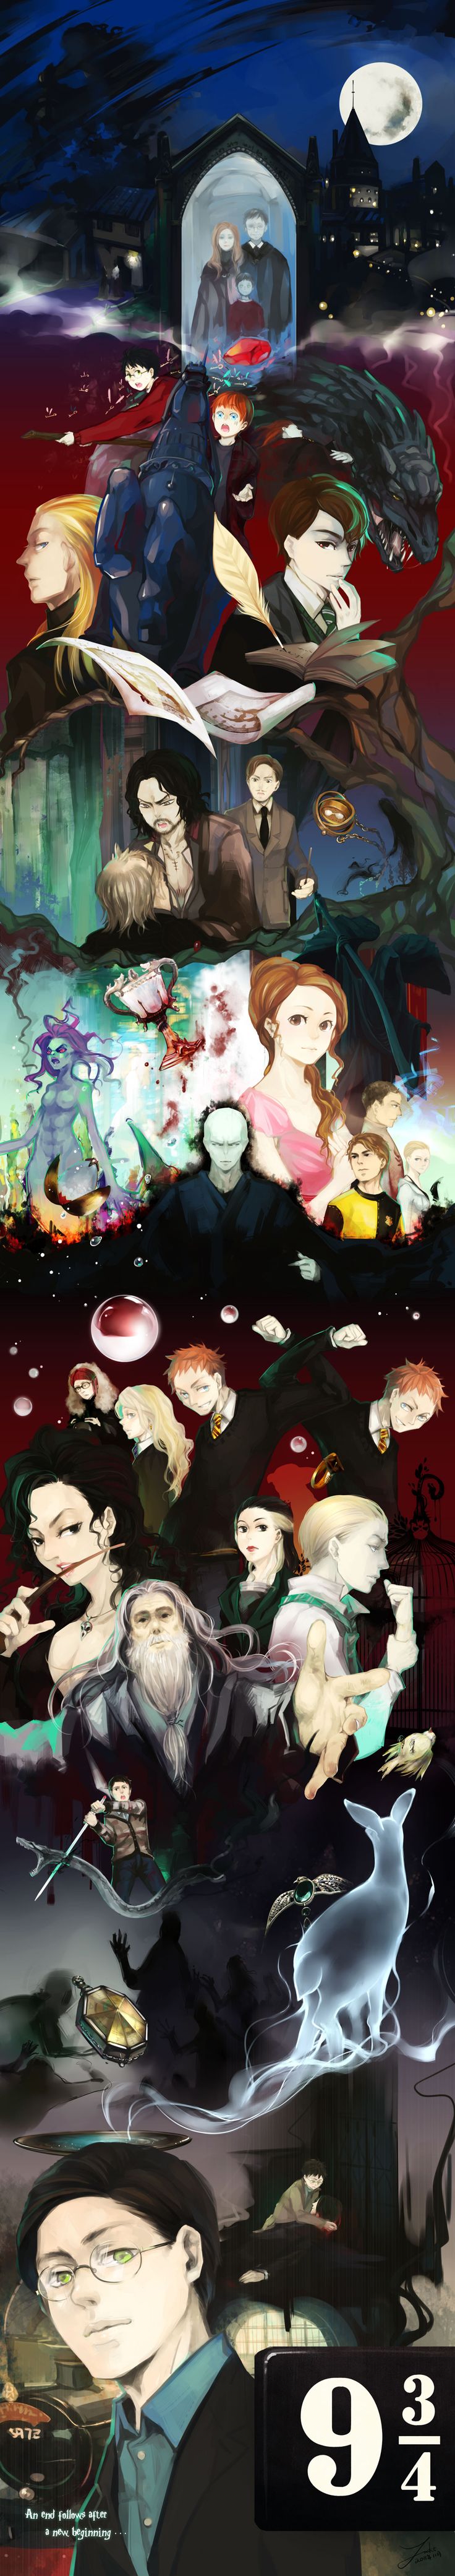 Bagaimana jika para pemeran Harry Potter digambarkan sebagai karakter anime?